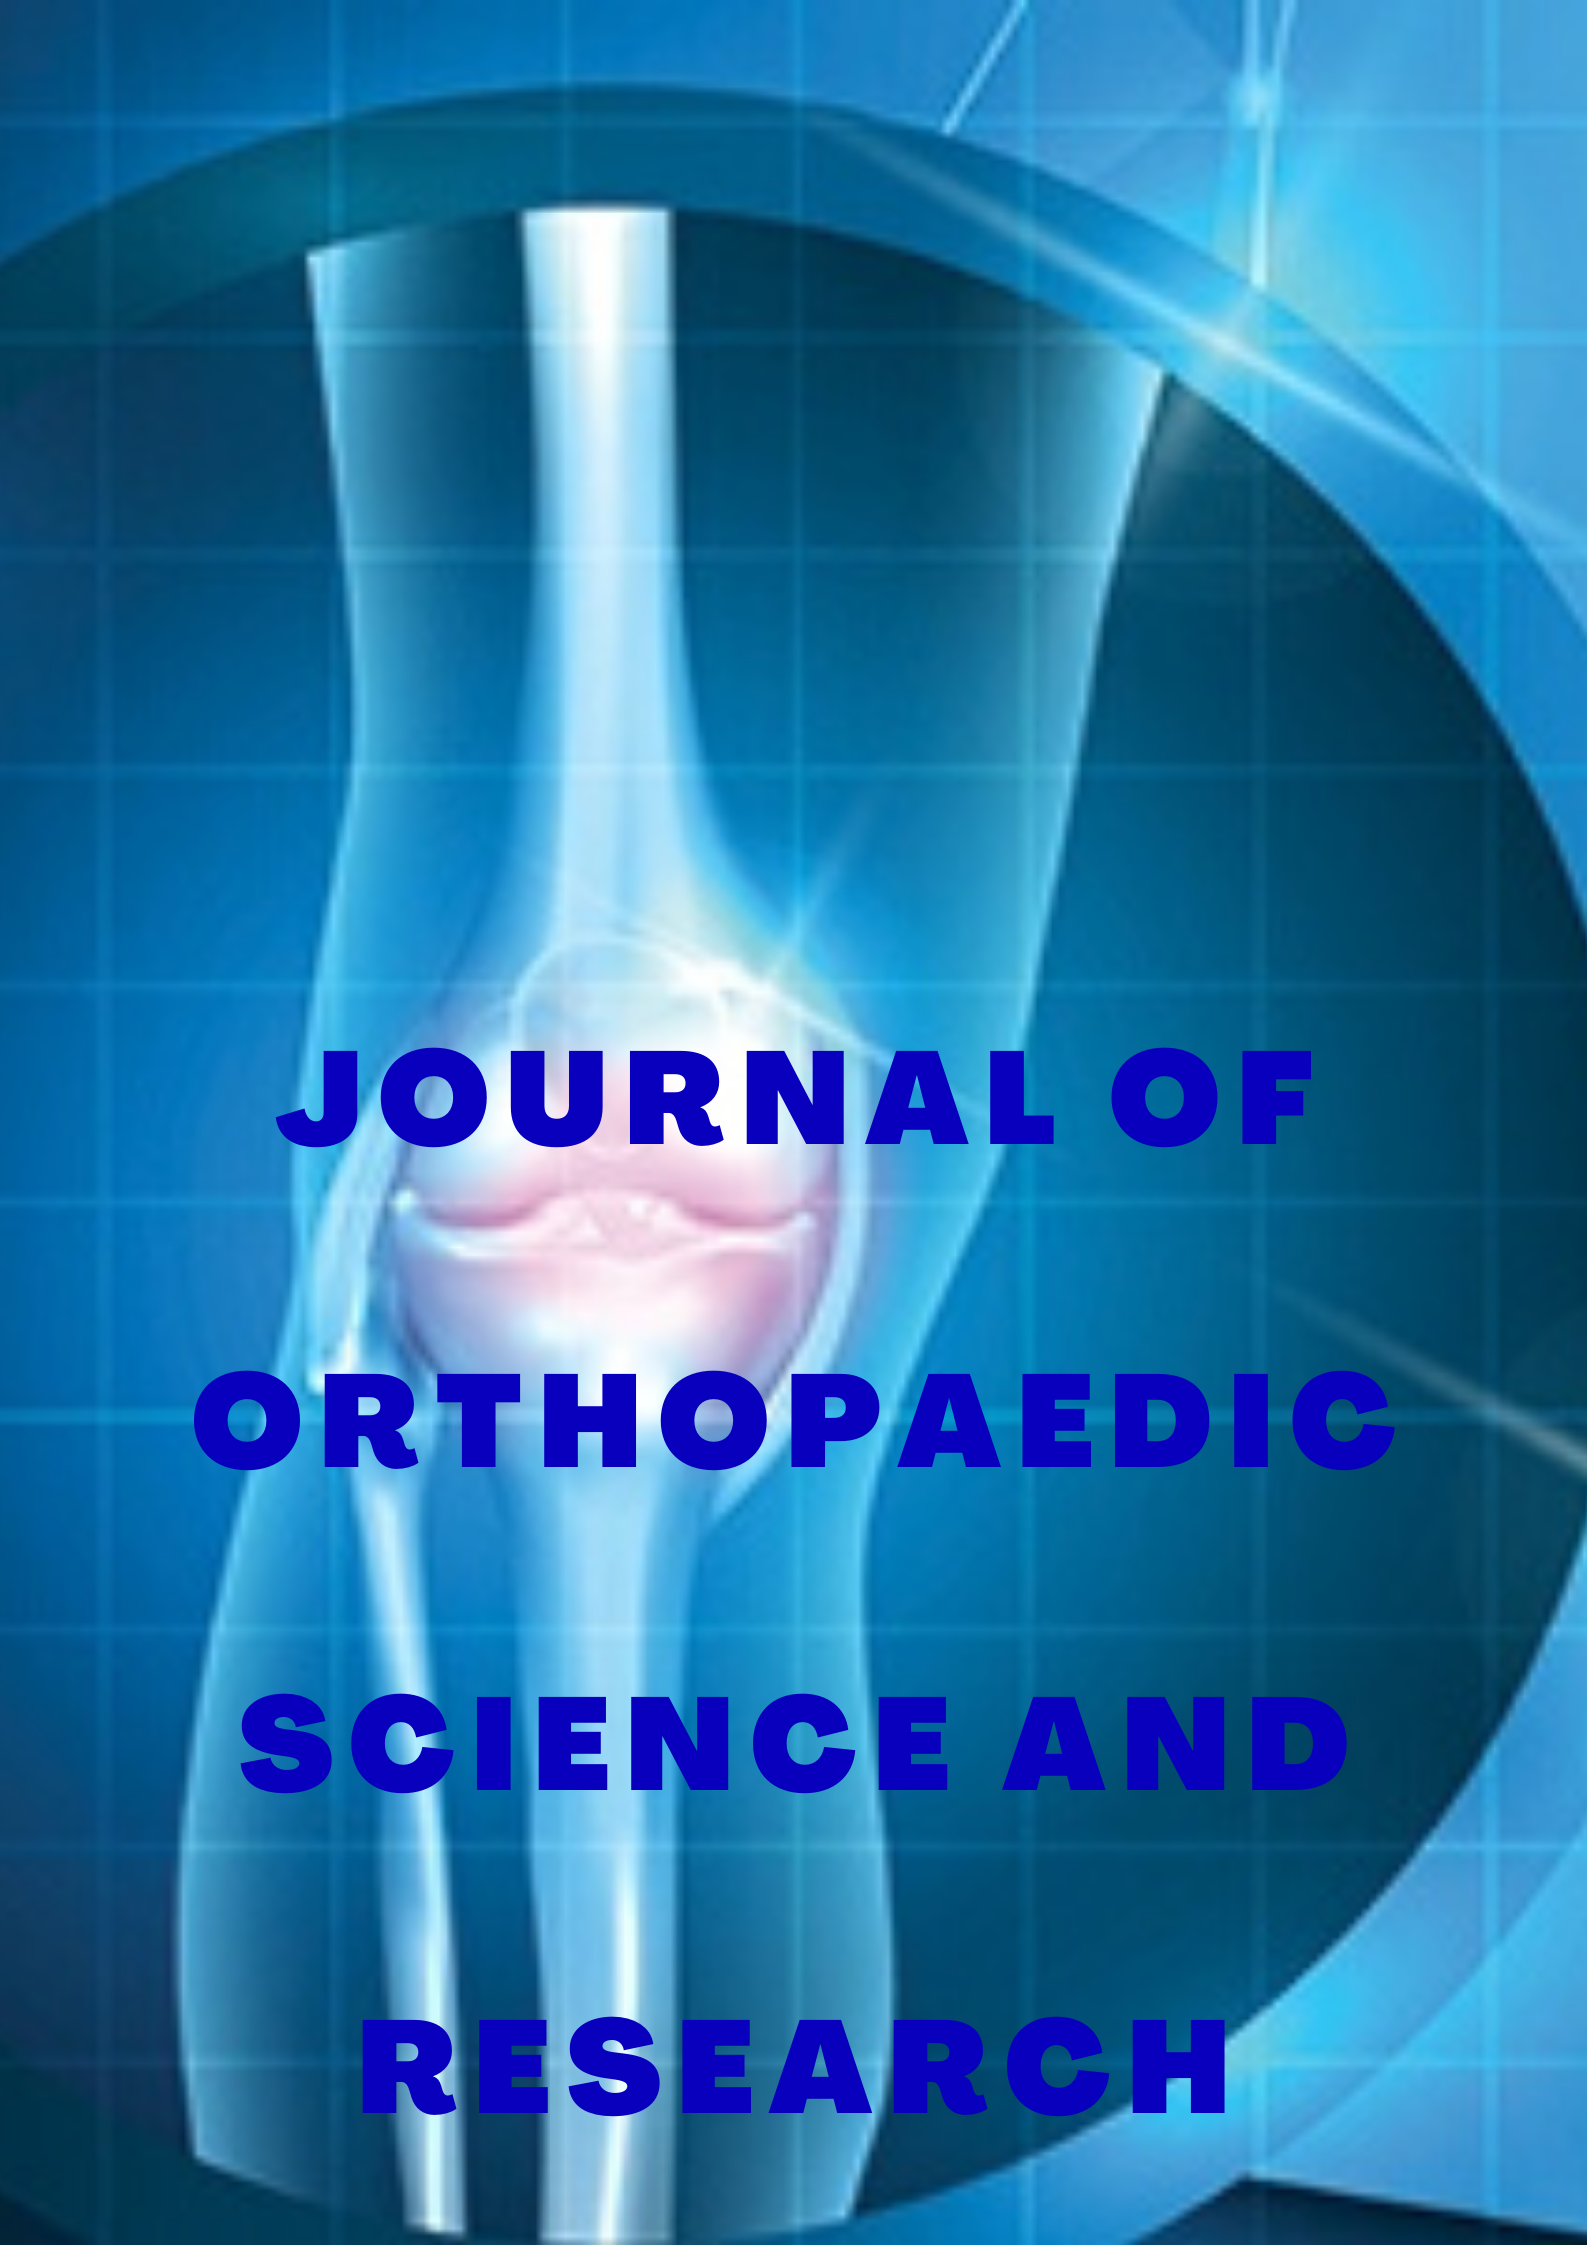 research topics on orthopaedics